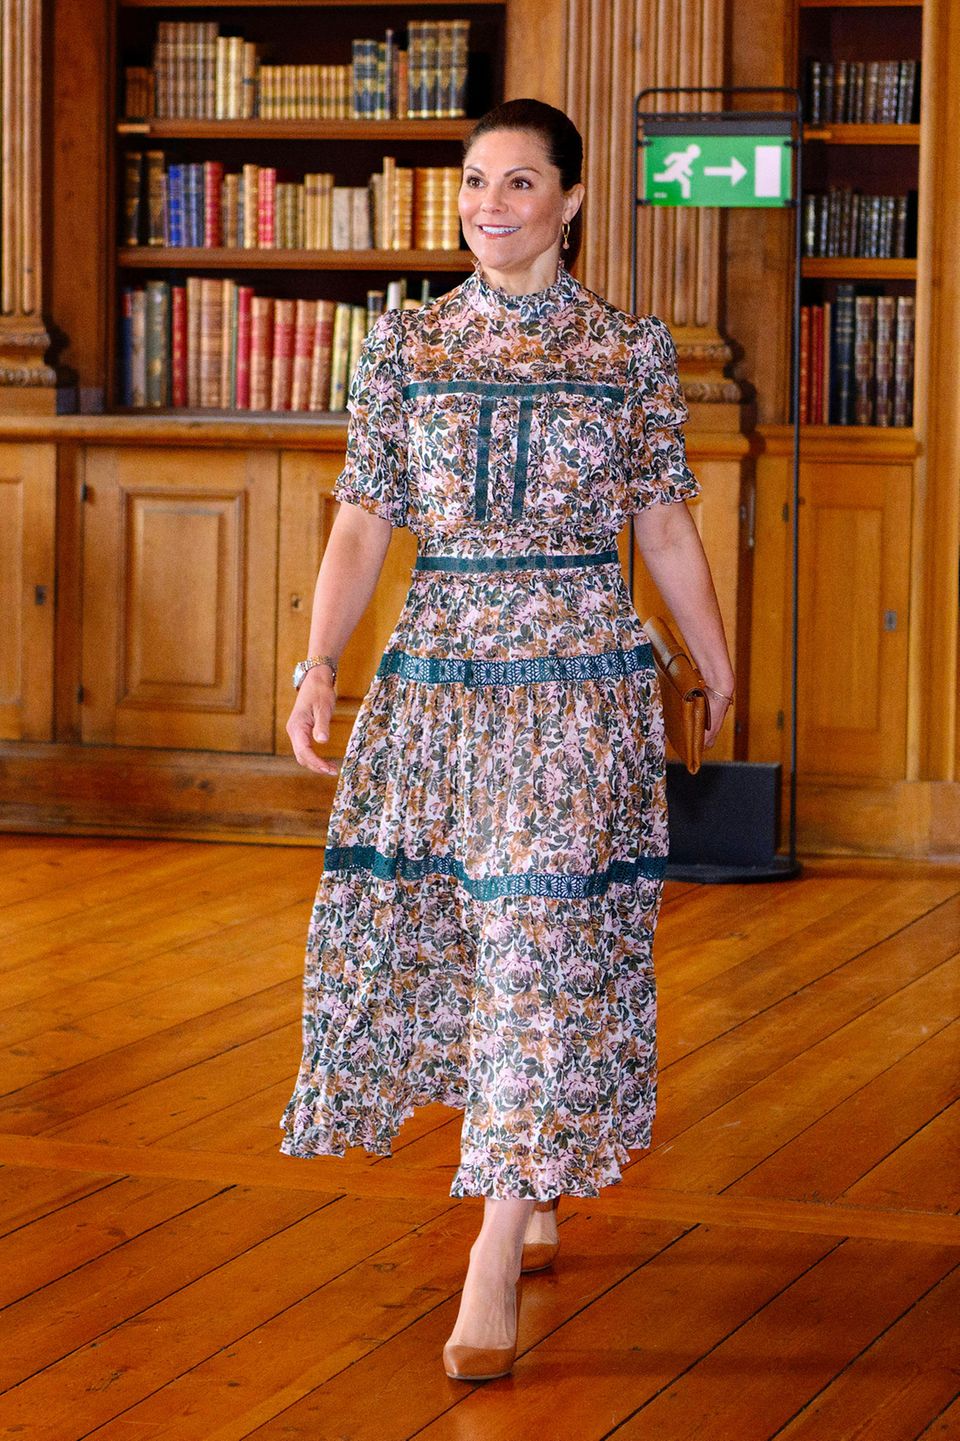 Prinzessin Victoria besucht die Feier zum 100. Jubiläum der "Kronprinzessin Margaretas Landstormsfond"-Foundation in Stockholm im floralen Kleid des schwedischen Labels By Malina, und bringt frischen Sommerwind in die verstaubte Bibliothek im Königlichen Schloss.